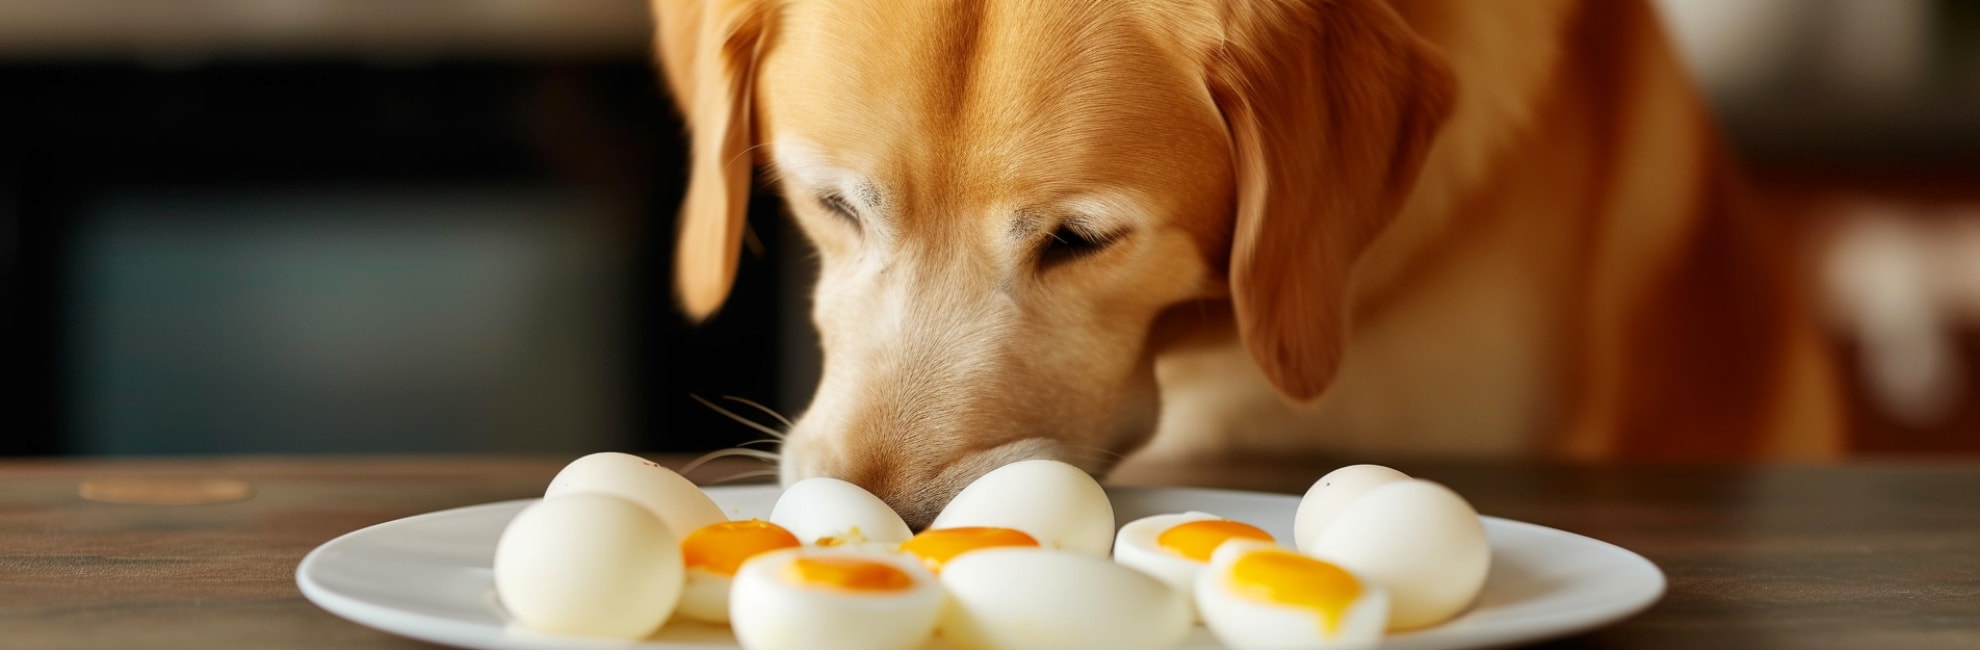 i cani possono mangiare le uova